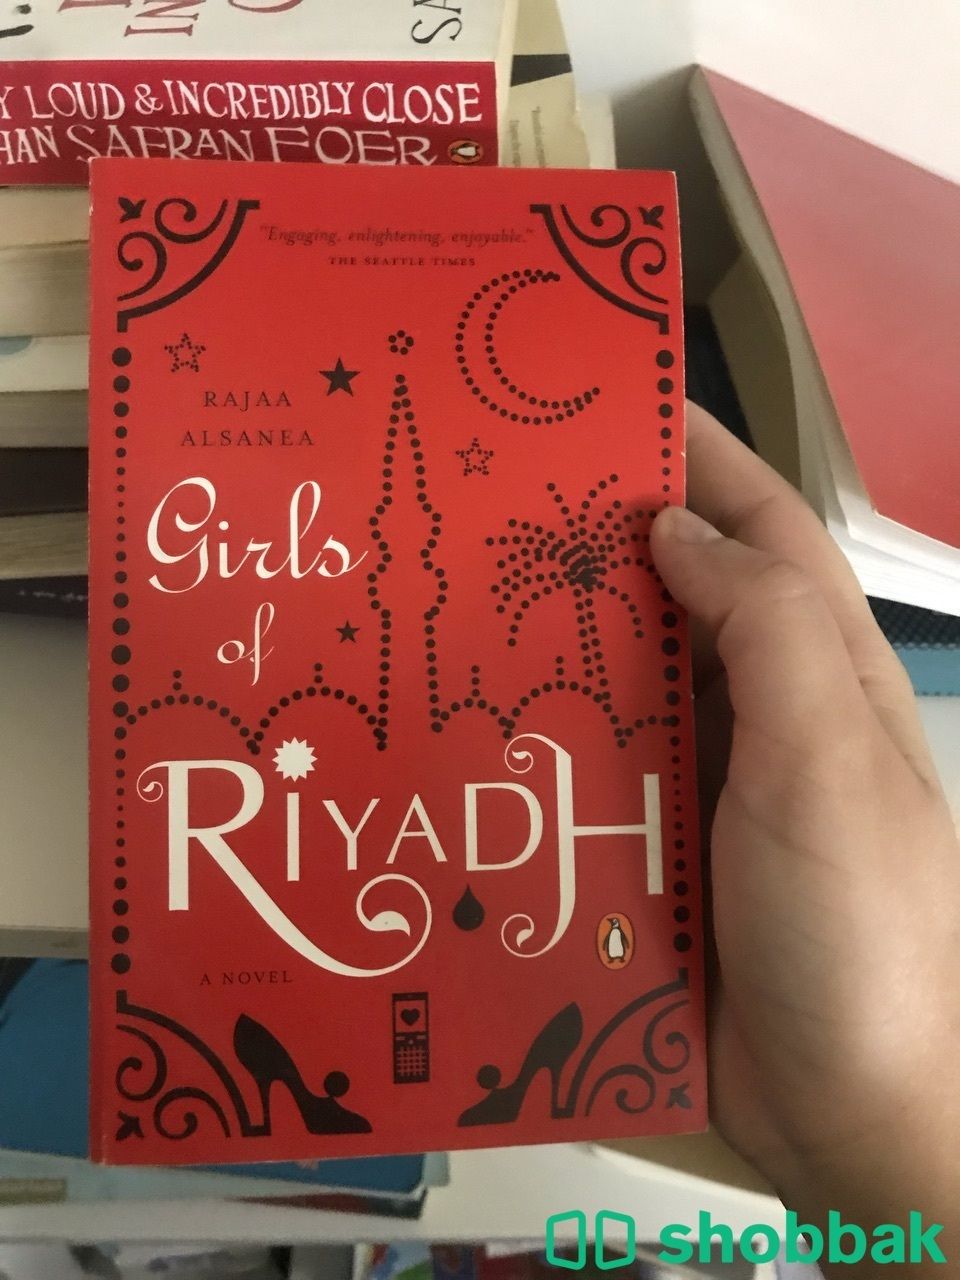 كتب مستعمله للبيع الكتاب الواحد ب 10 شباك السعودية